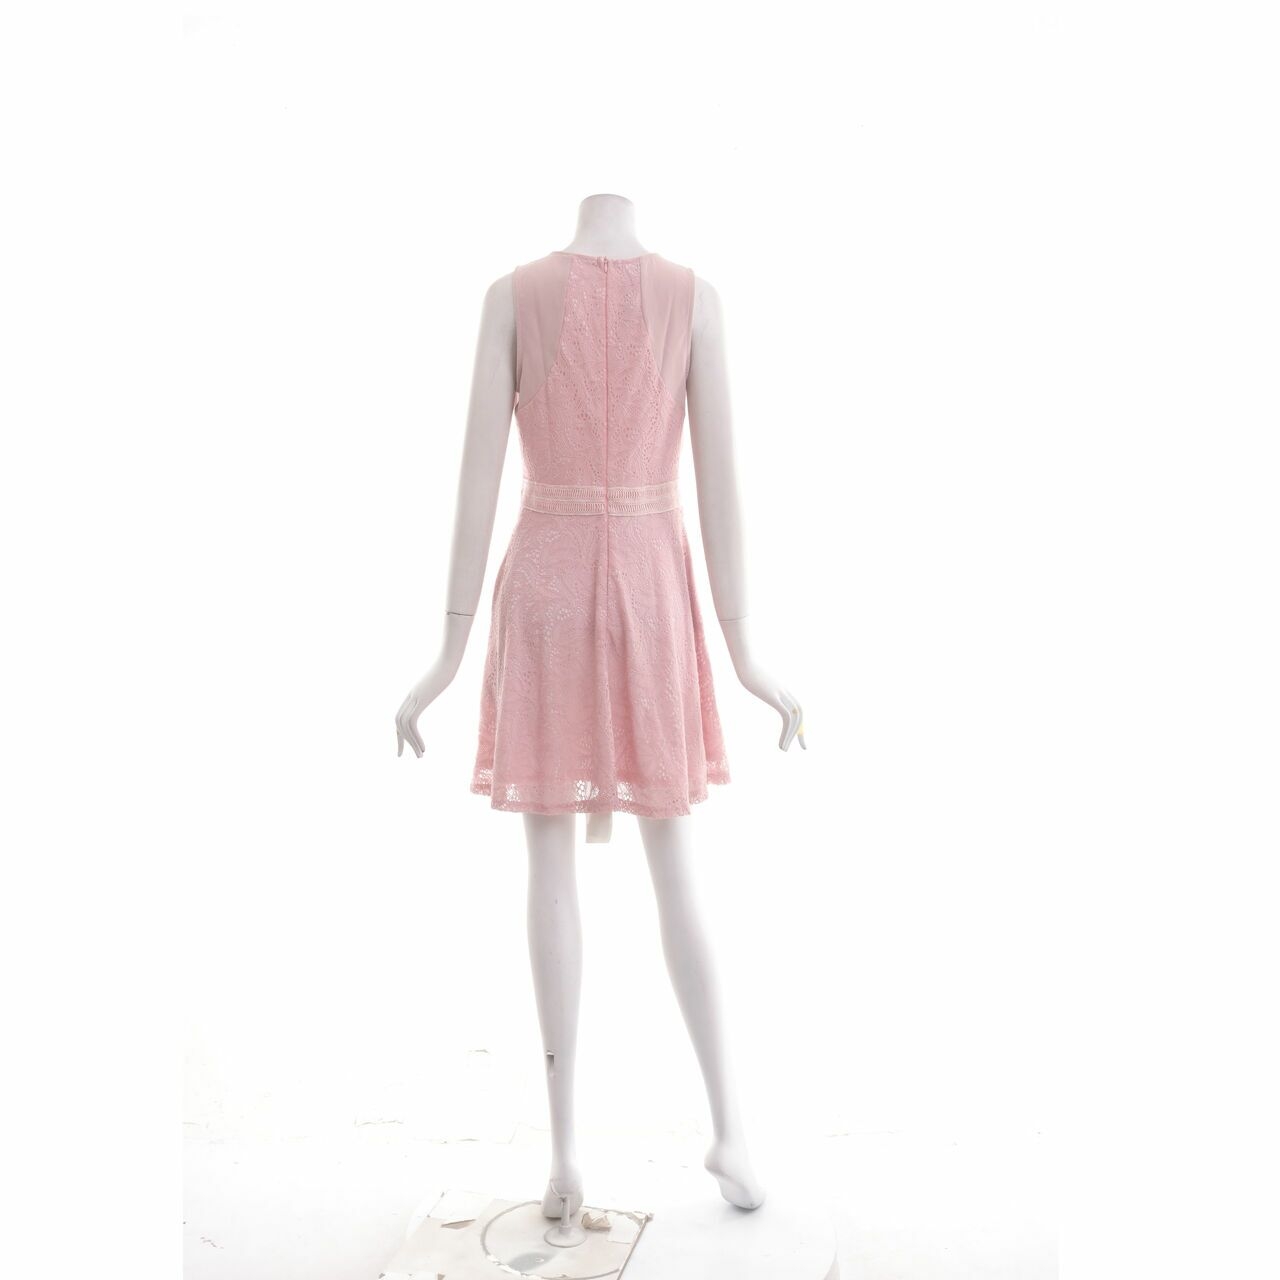 The Stage Walk Pink Mini Dress